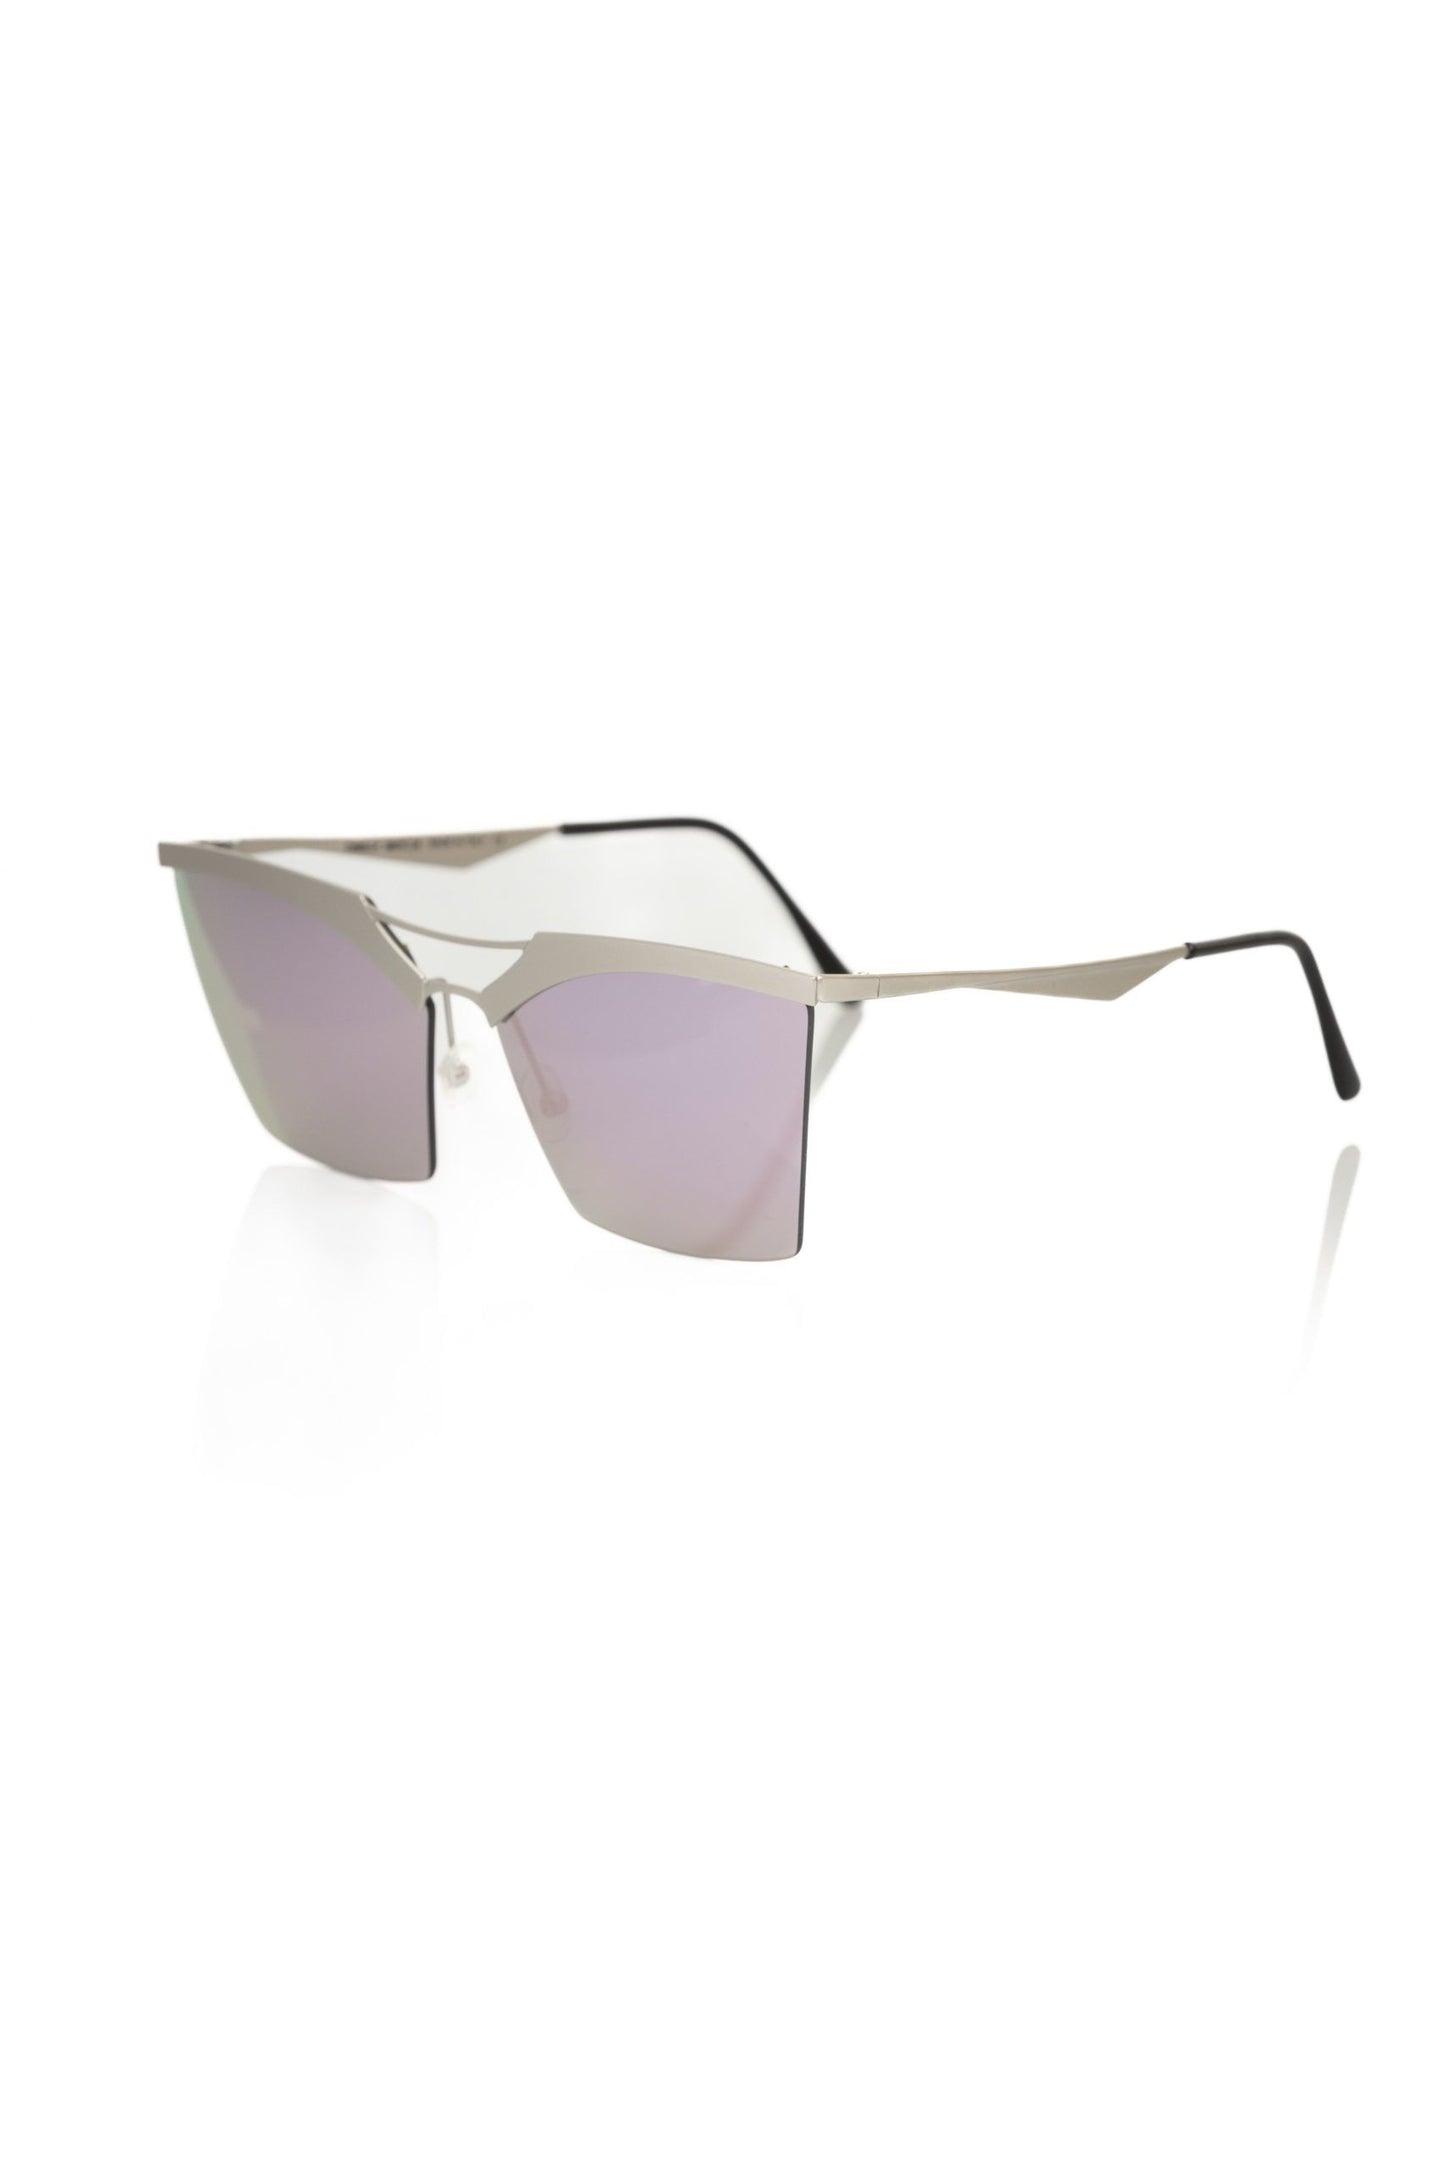 Frankie Morello FRMO-22090 Silver Metallic Fibre Sunglasses